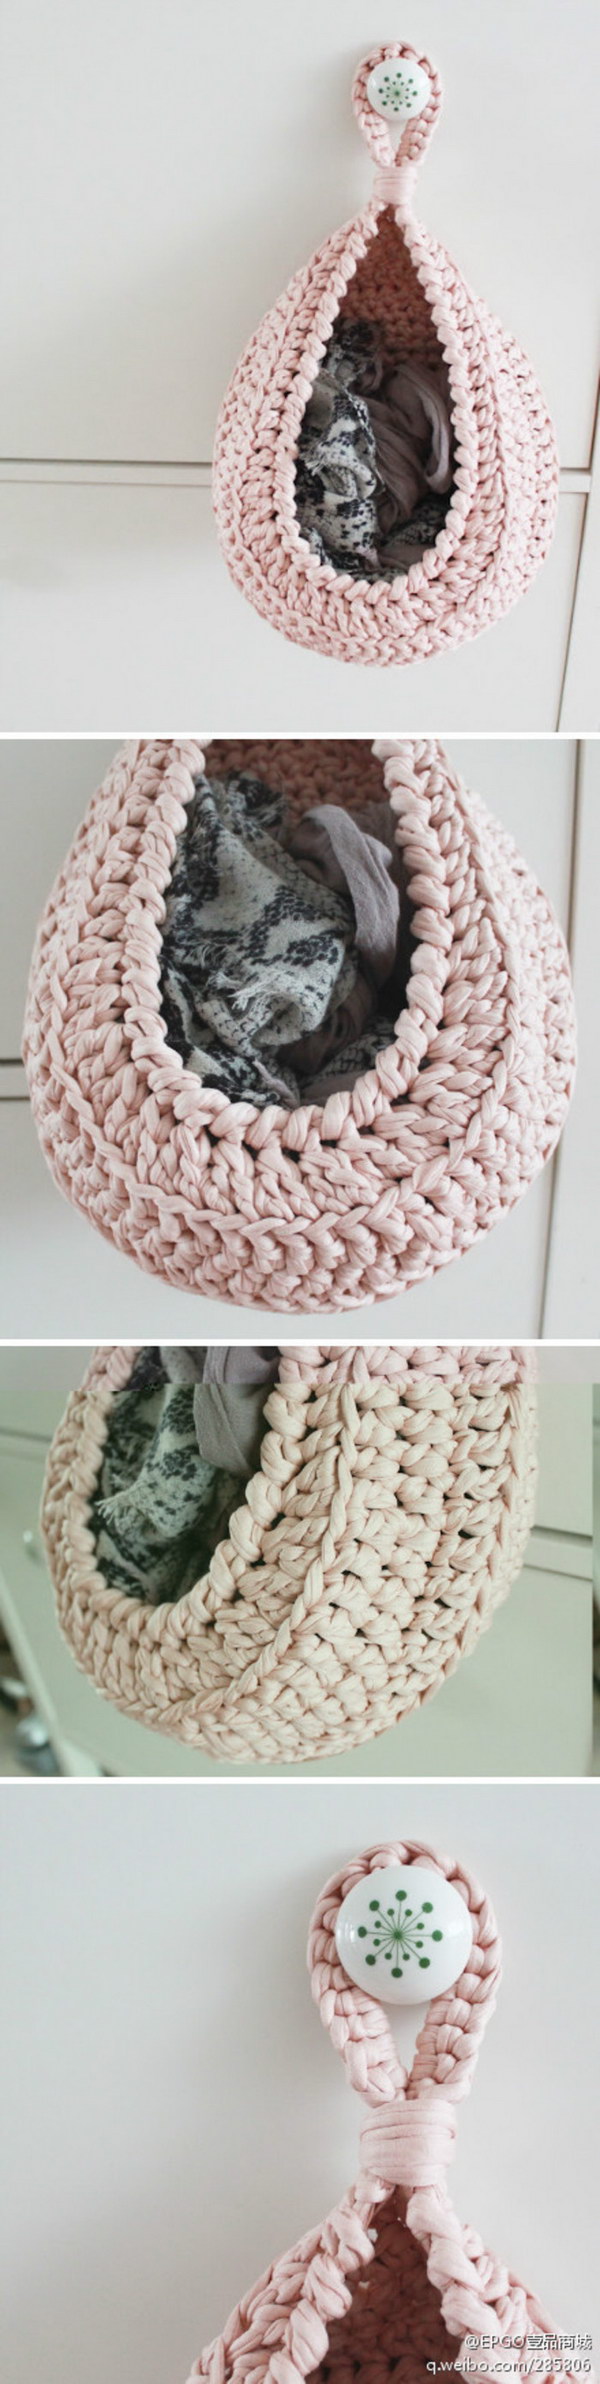 crochet projects crochet towel holder free pattern bbjqtkn